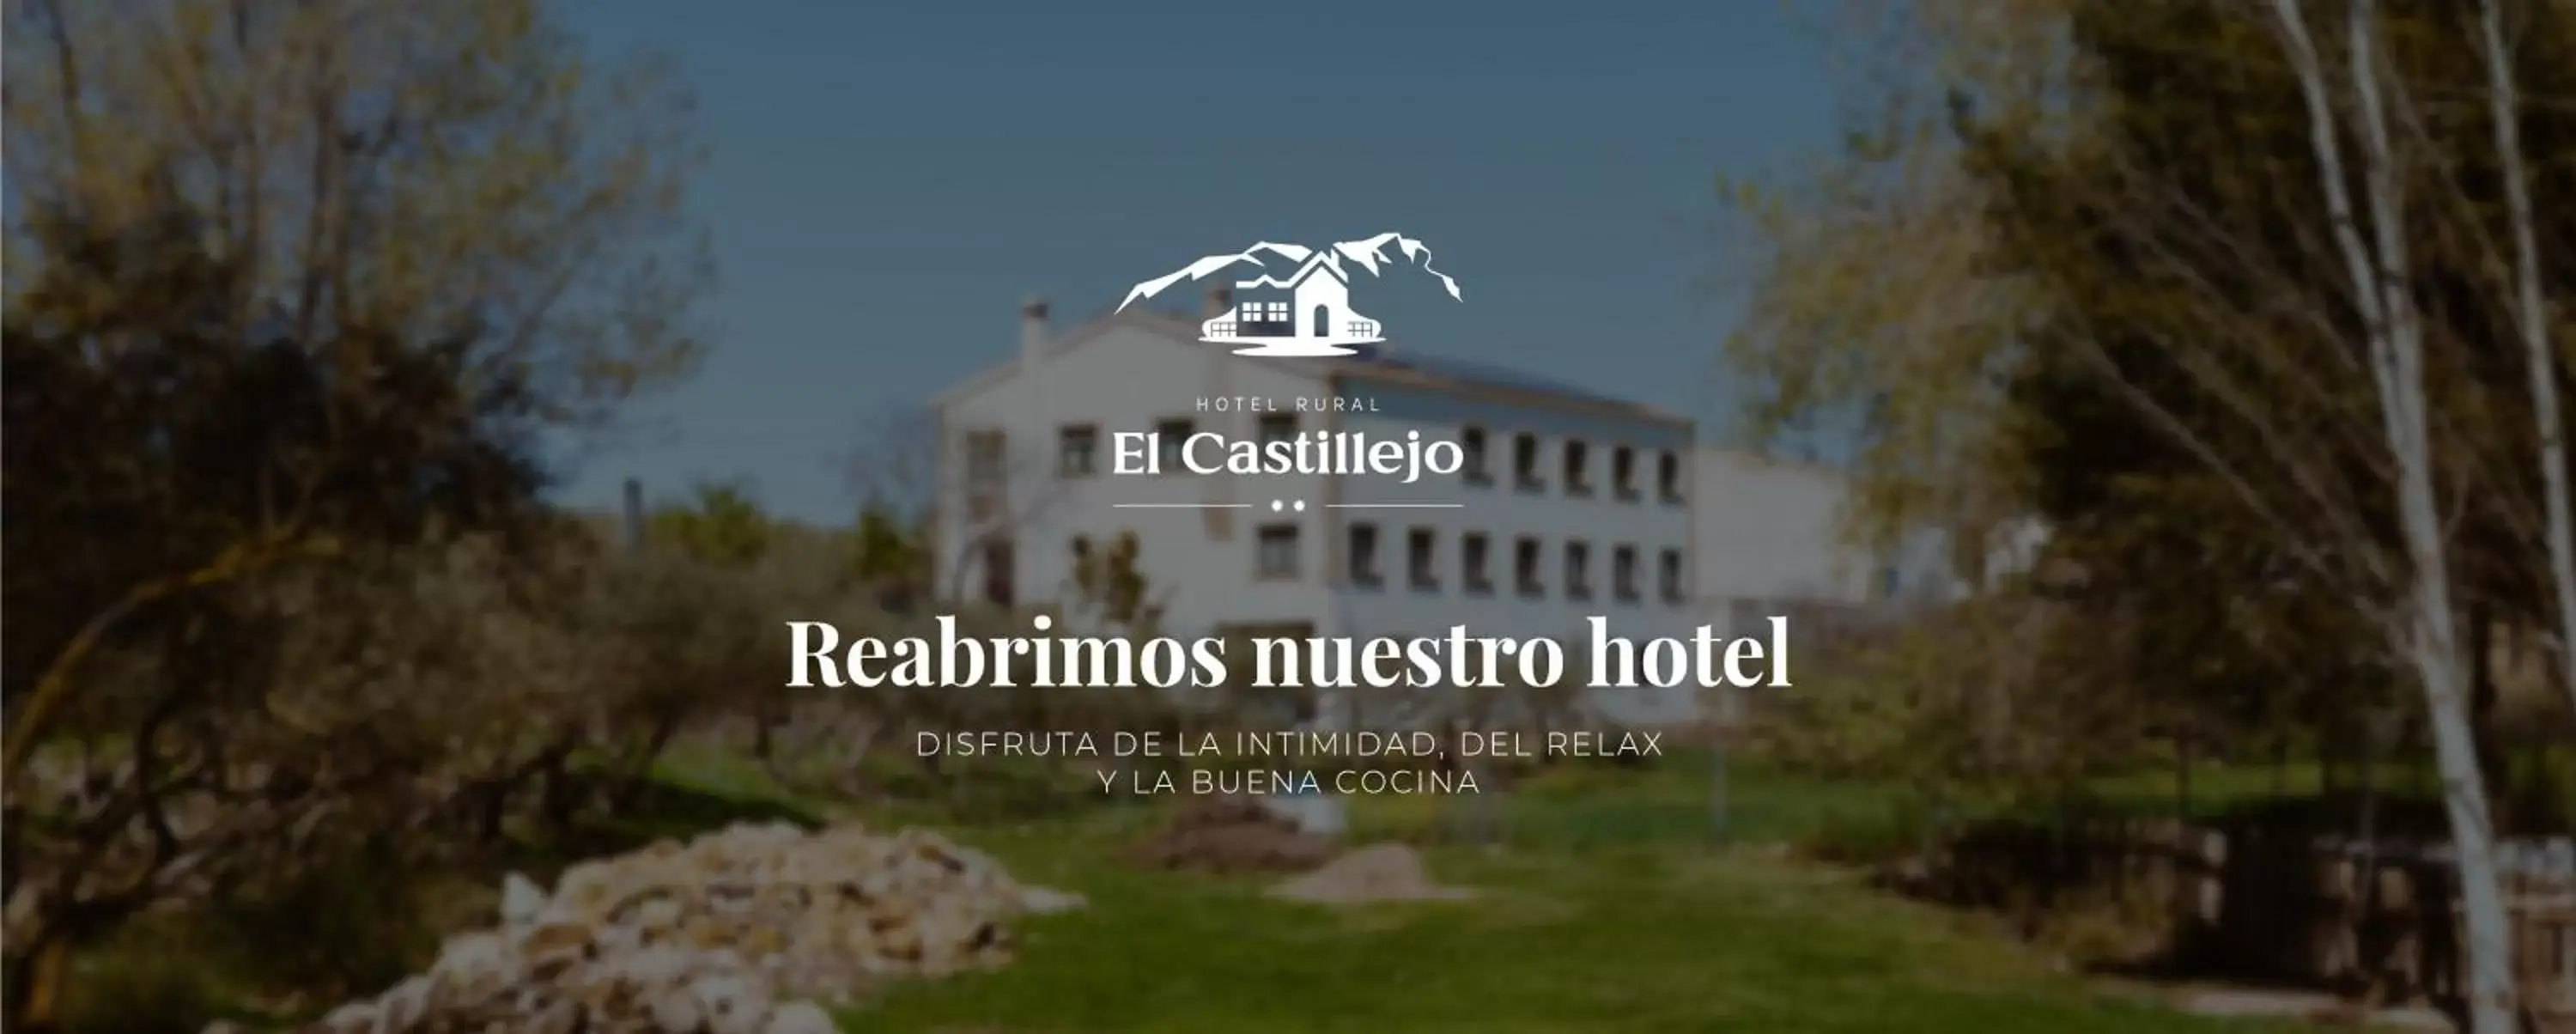 Property Building in Hotel Rural El Castillejo